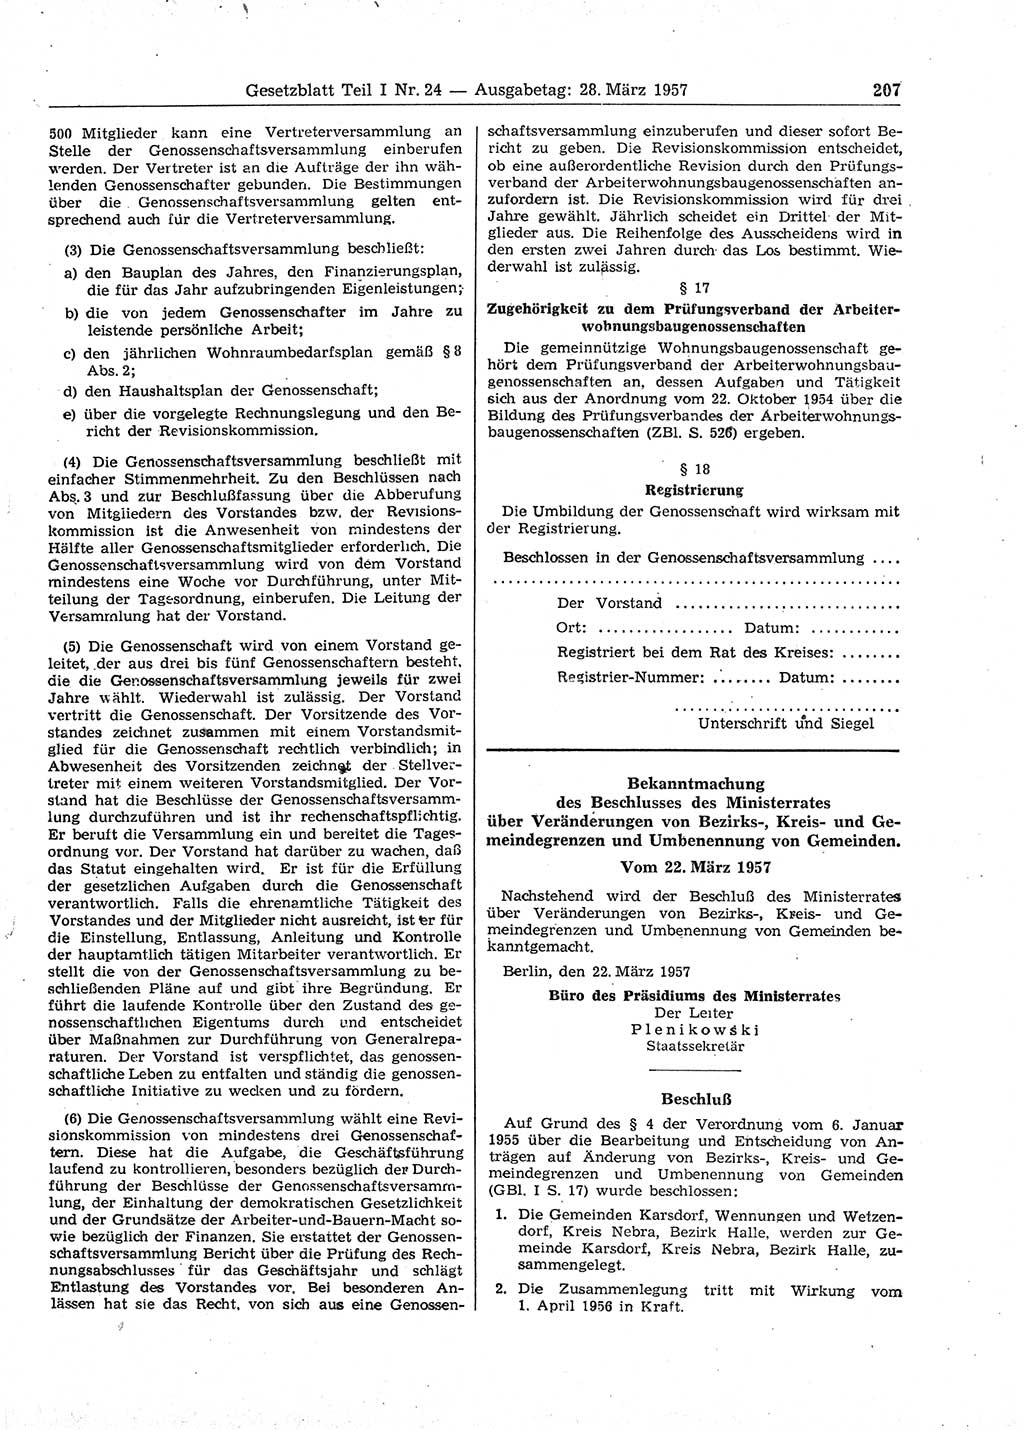 Gesetzblatt (GBl.) der Deutschen Demokratischen Republik (DDR) Teil Ⅰ 1957, Seite 207 (GBl. DDR Ⅰ 1957, S. 207)